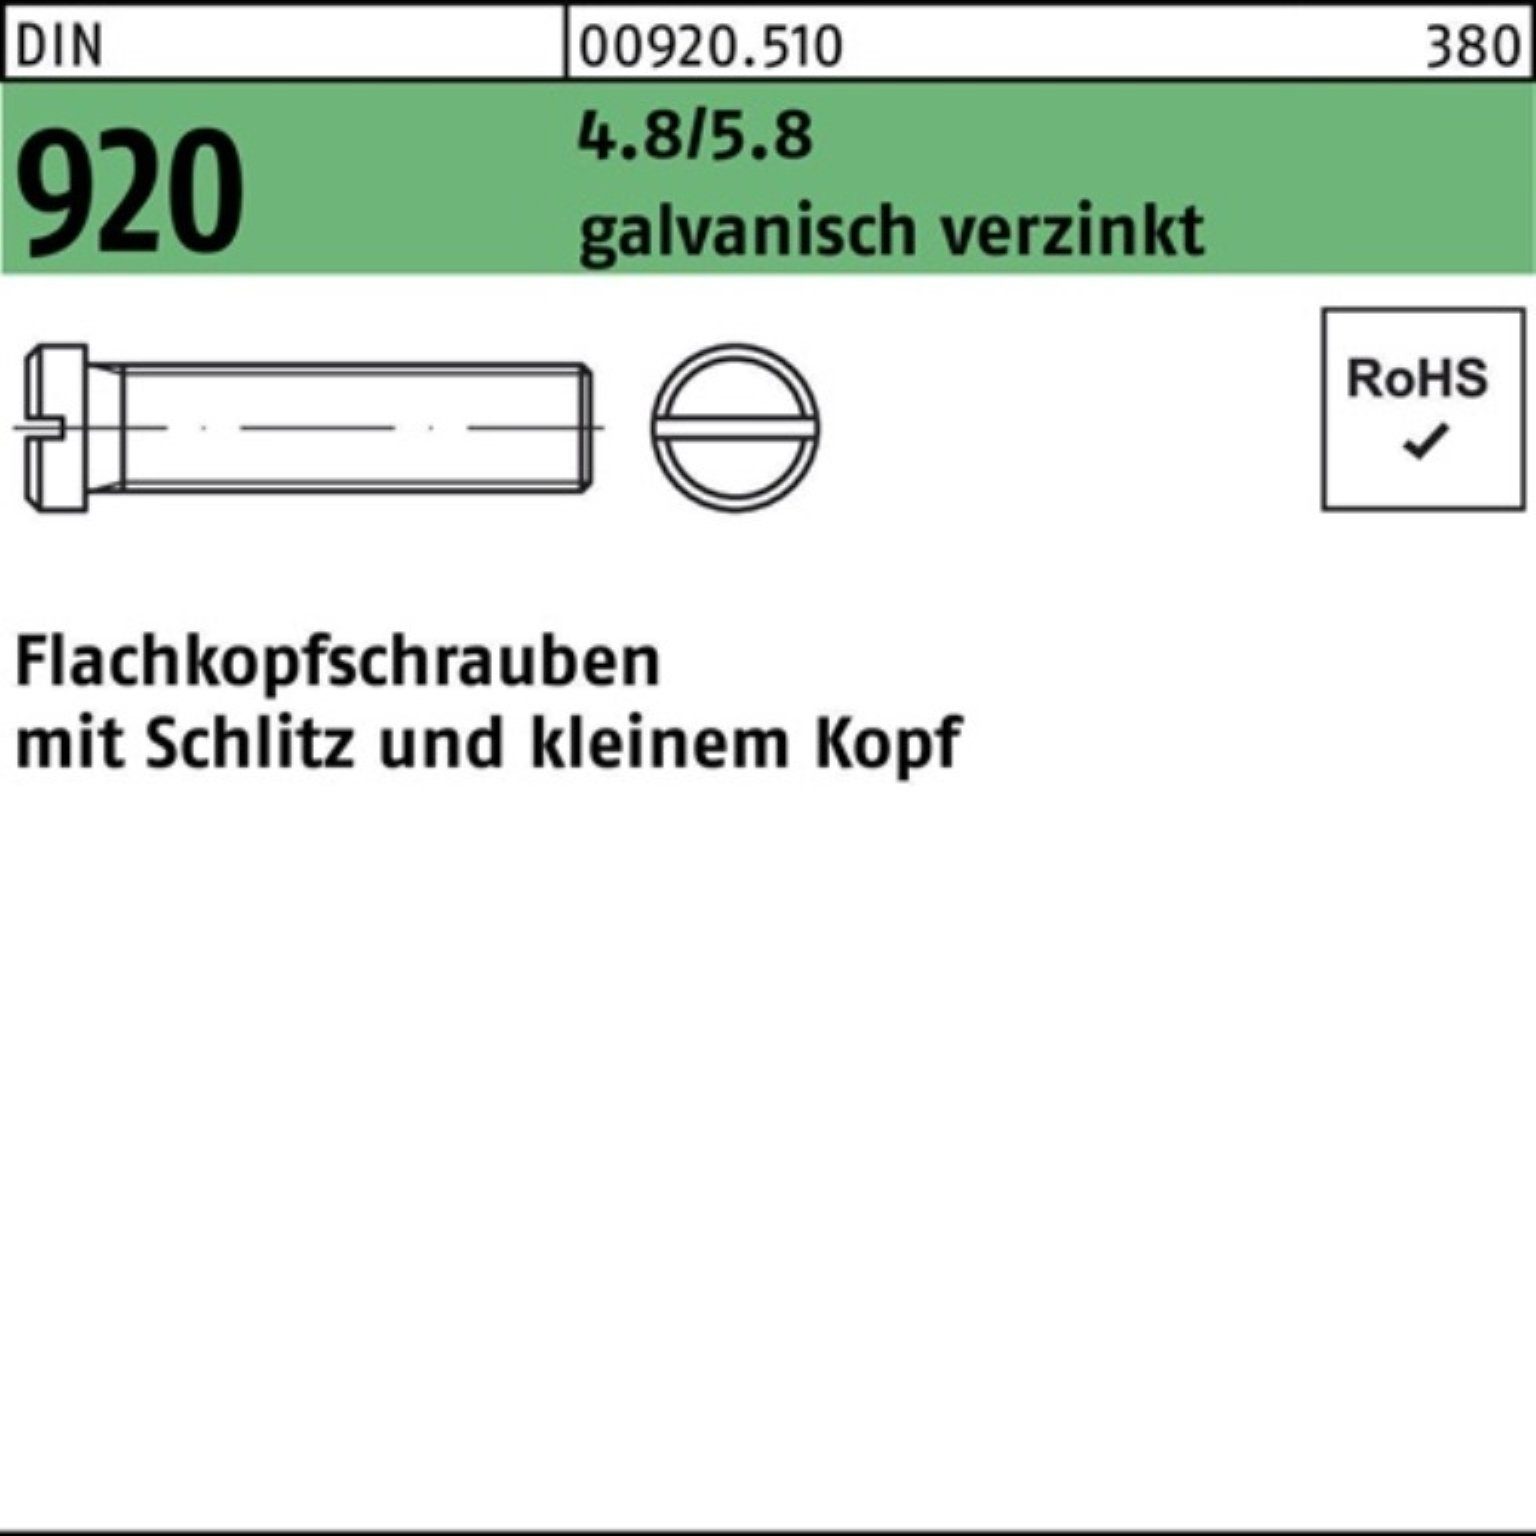 Reyher Schraube 100er Pack Flachkopfschraube DIN 920 Schlitz M4x 16 4.8/5.8 galv.verz.